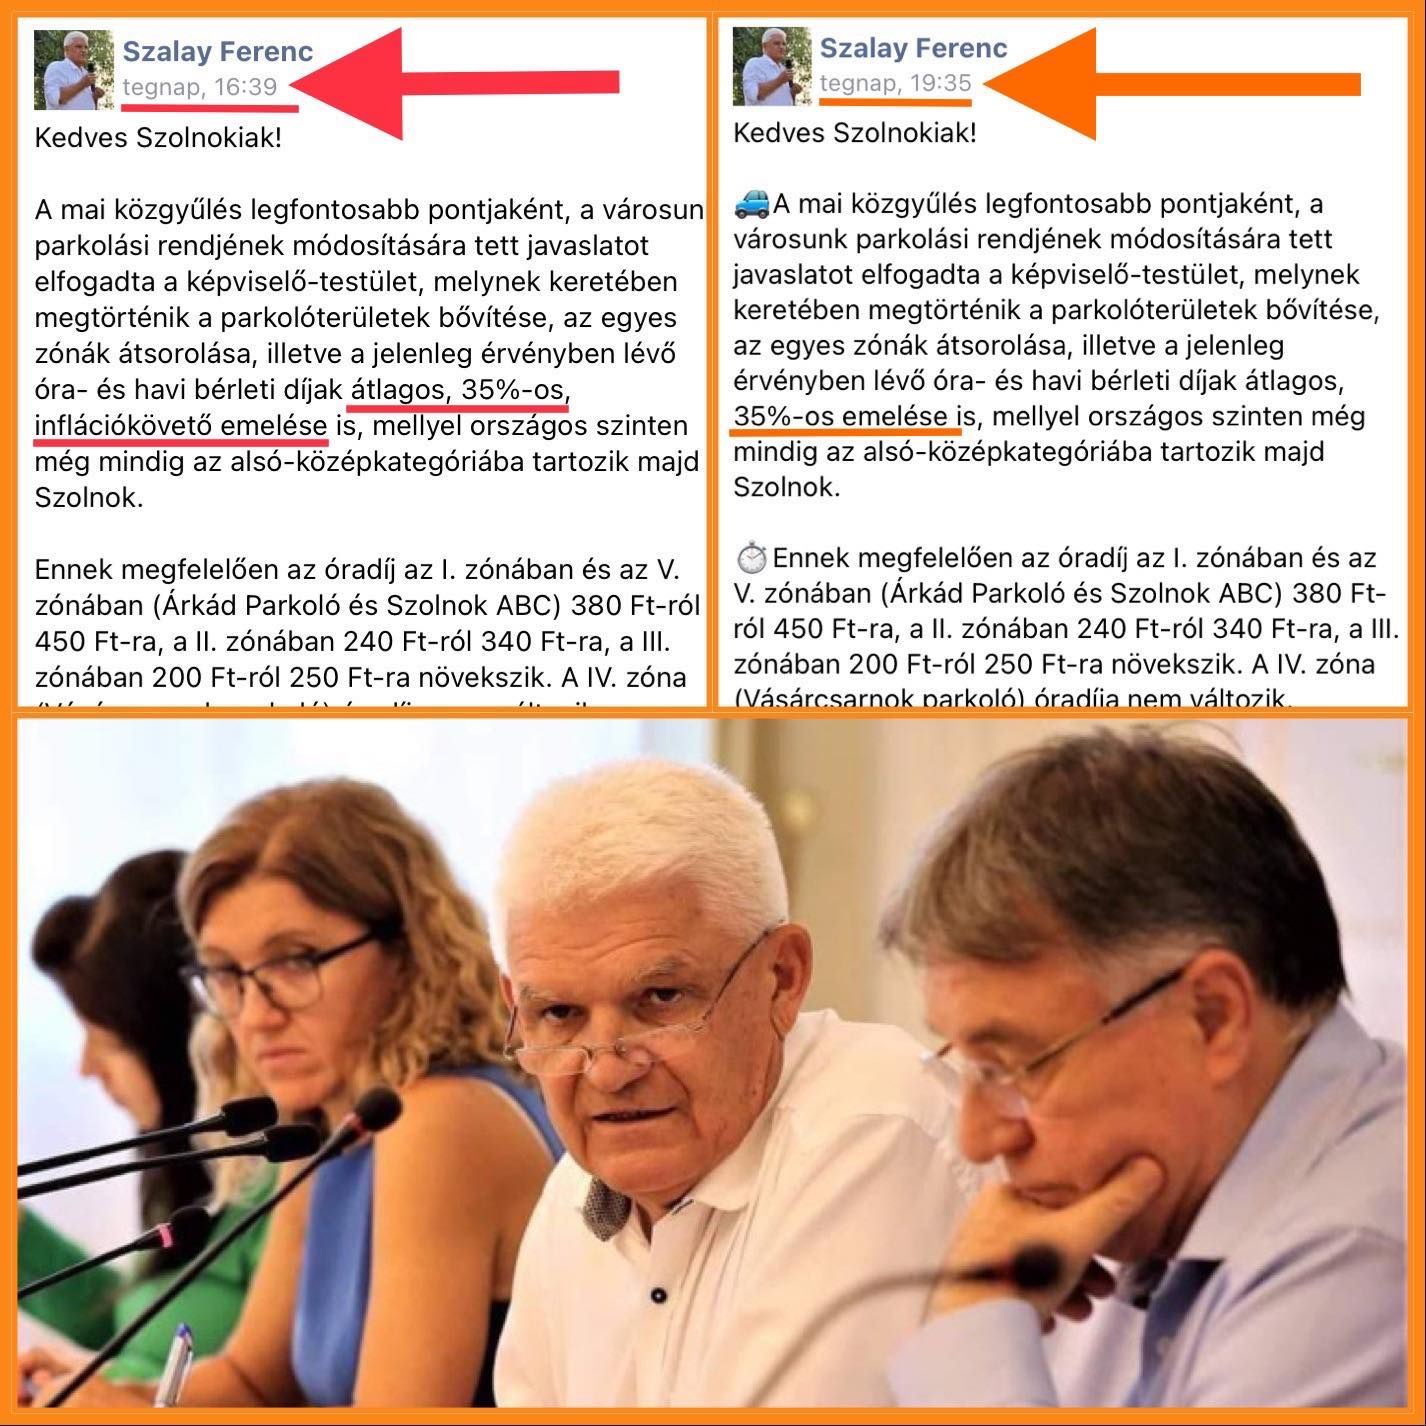 Kínos baki maradt a fideszes polgármester Facebook-posztjában